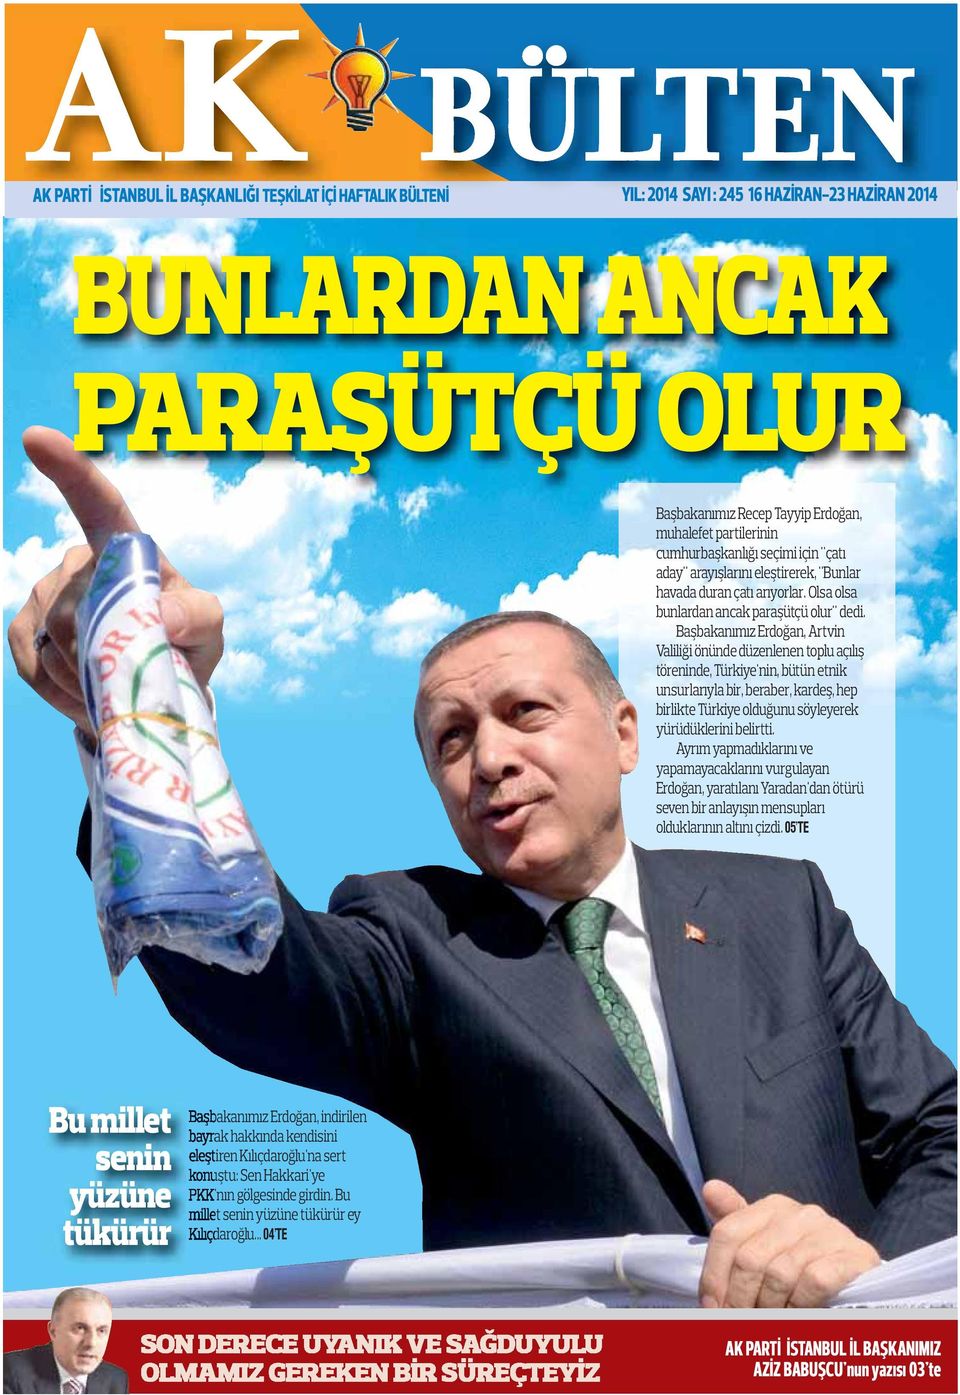 Başbakanımız Erdoğan, Artvin Valiliği önünde düzenlenen toplu açılış töreninde, Türkiye'nin, bütün etnik unsurlarıyla bir, beraber, kardeş, hep birlikte Türkiye olduğunu söyleyerek yürüdüklerini